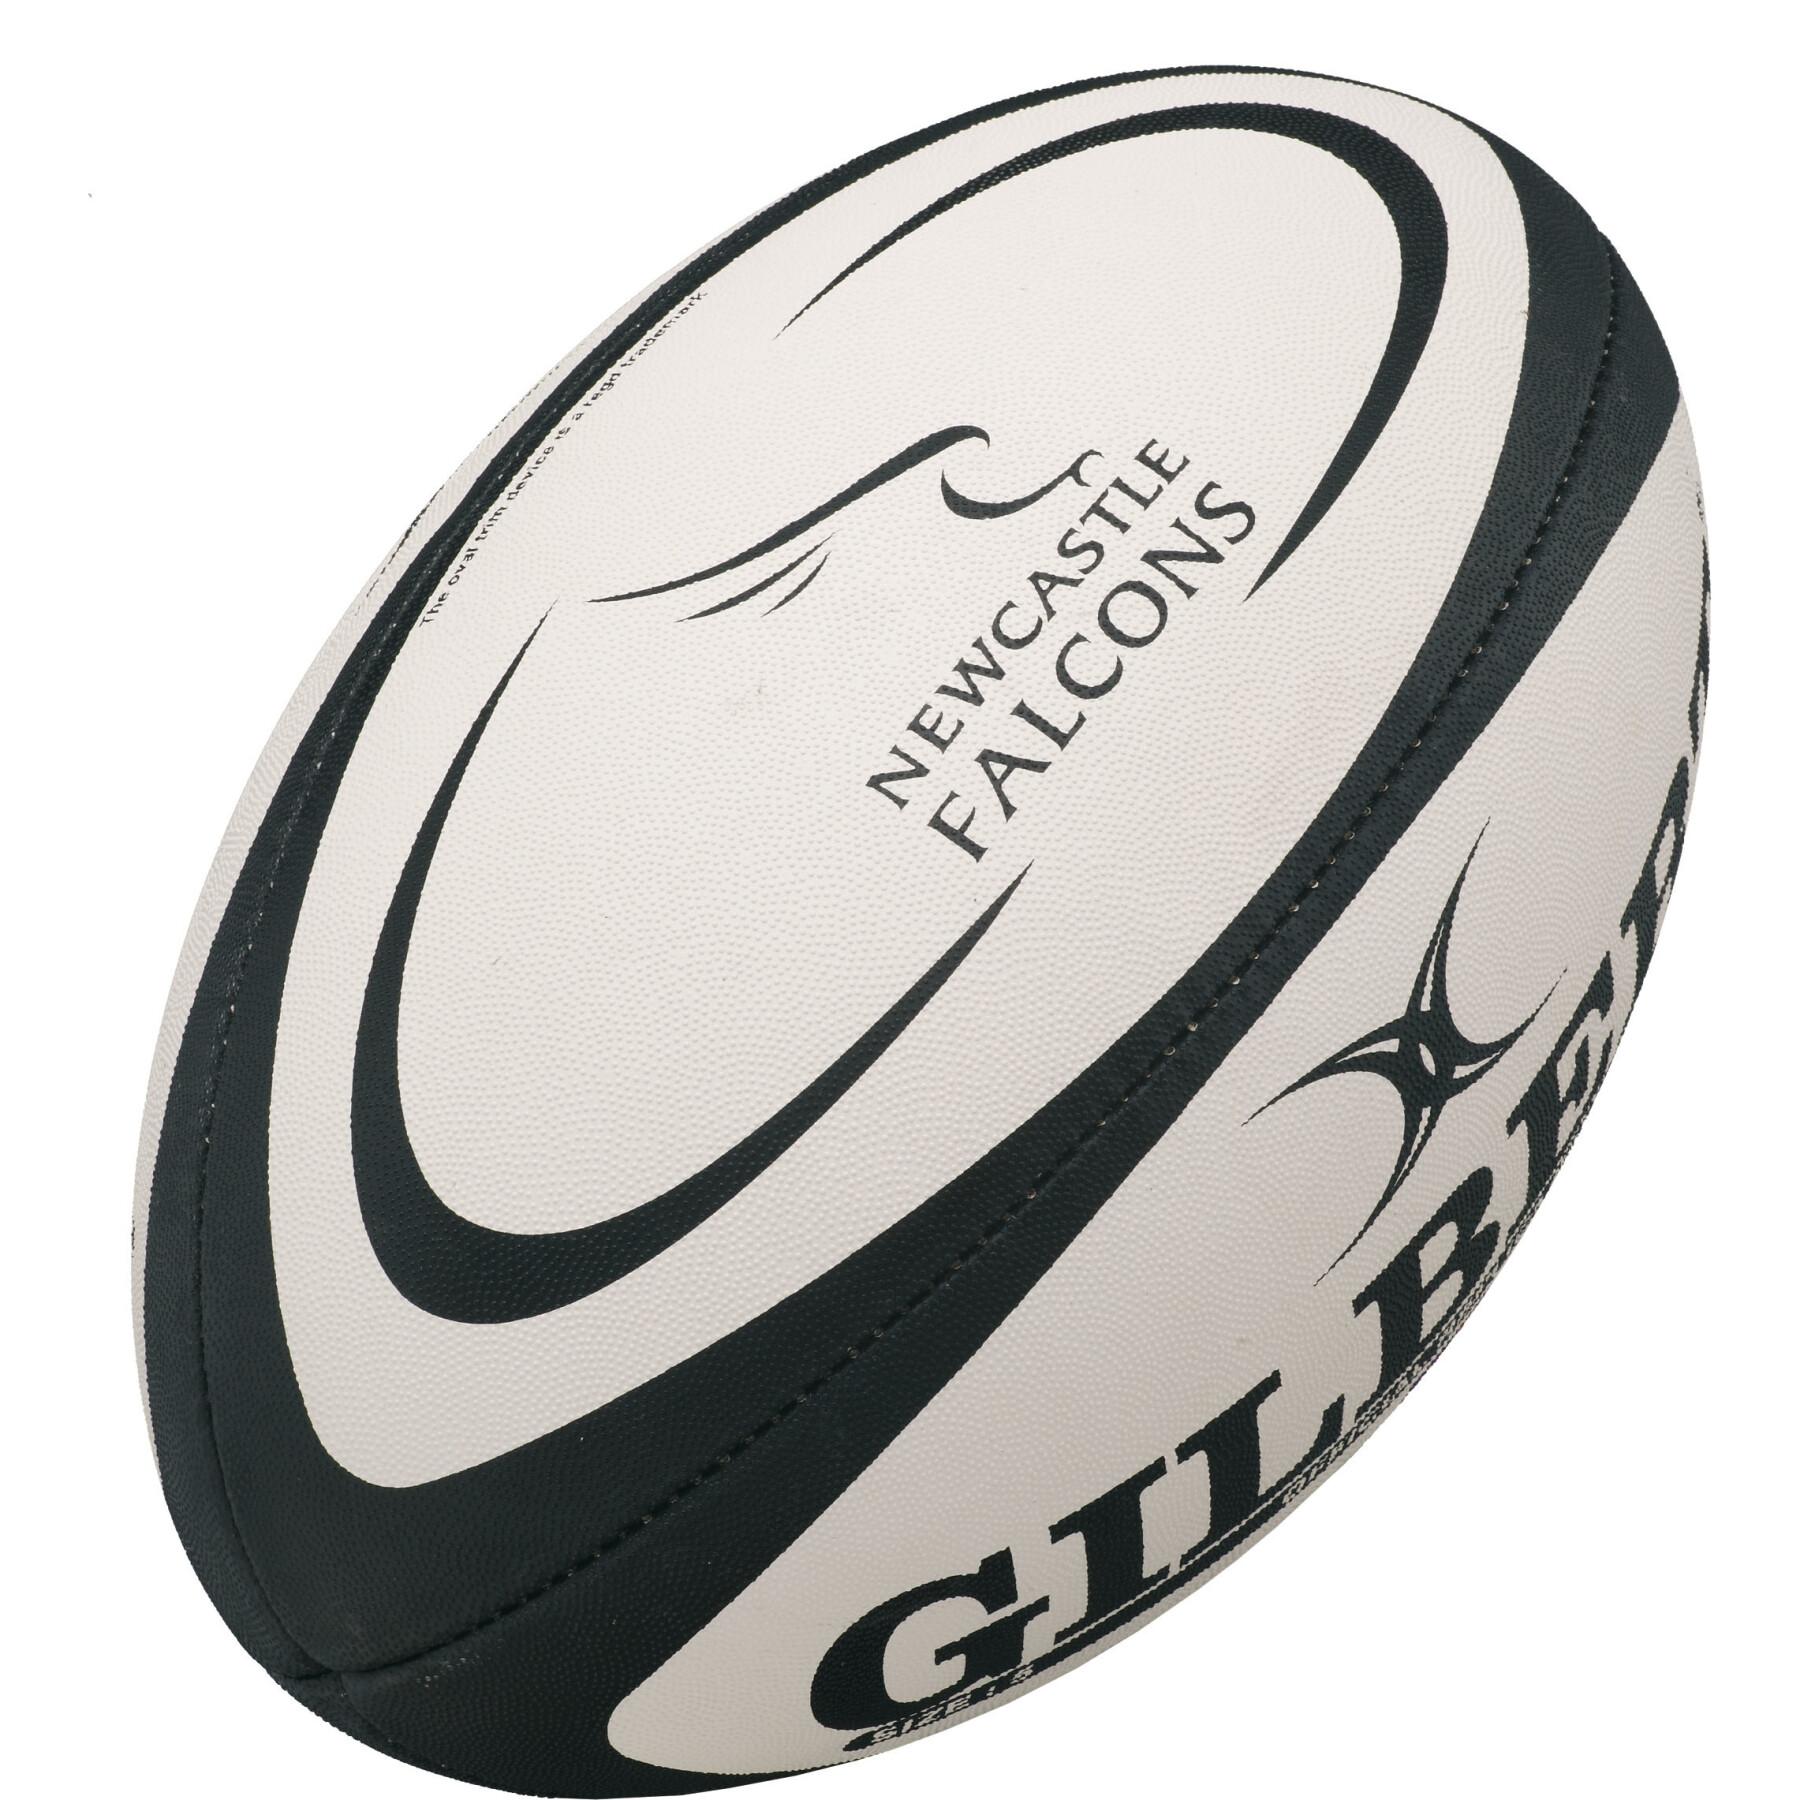 Ballon de rugby Gilbert Newcastle Falcons